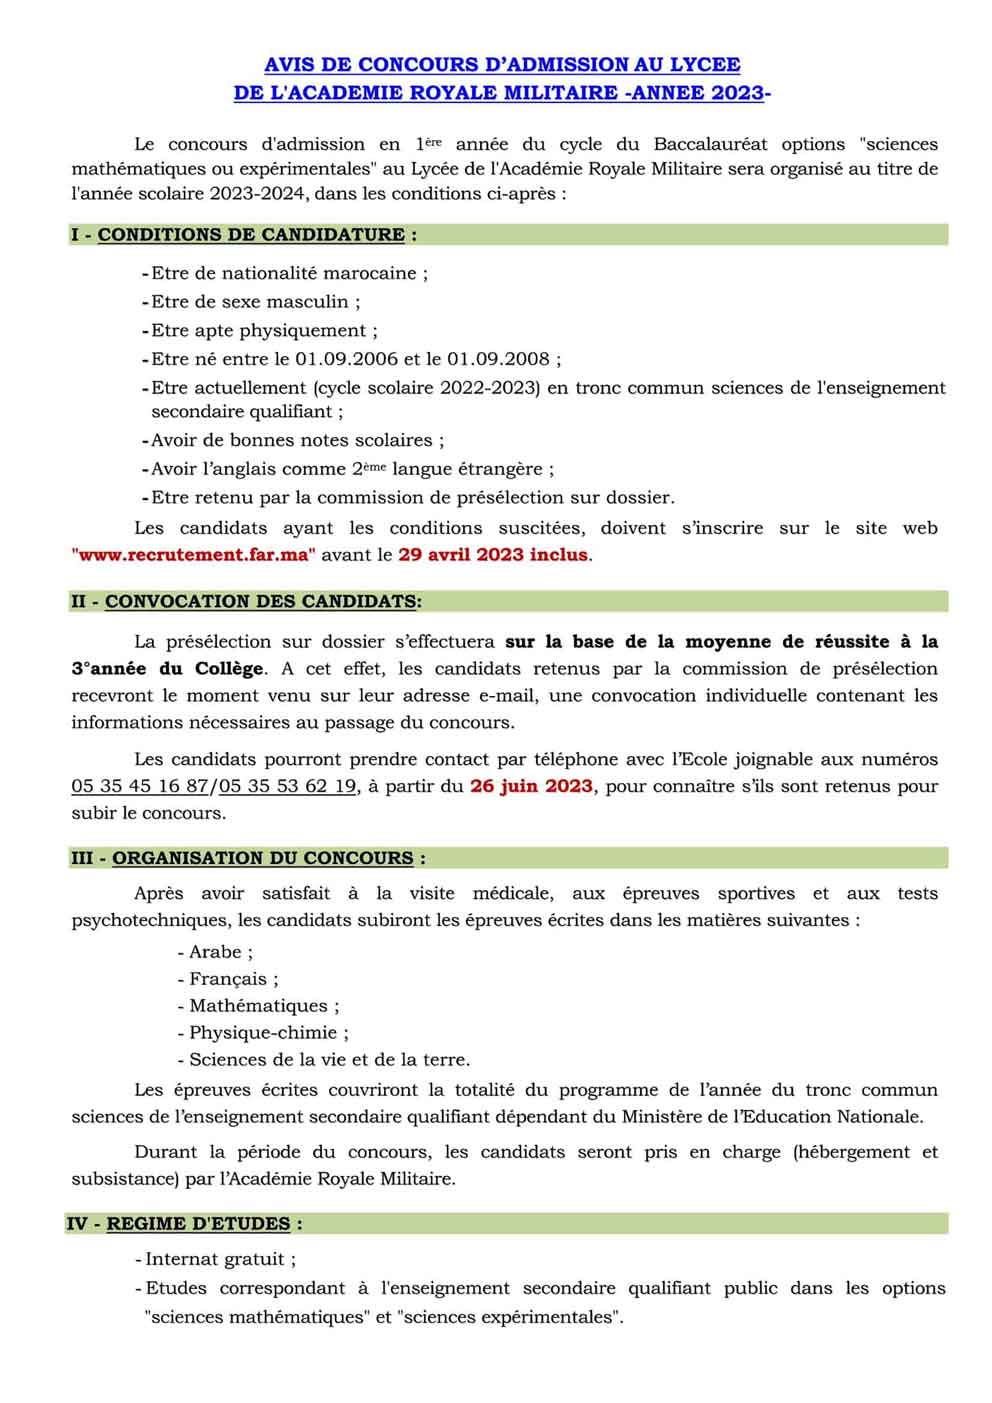 Concours d’admission au Lycée de l’Académie Royale Militaire 2023